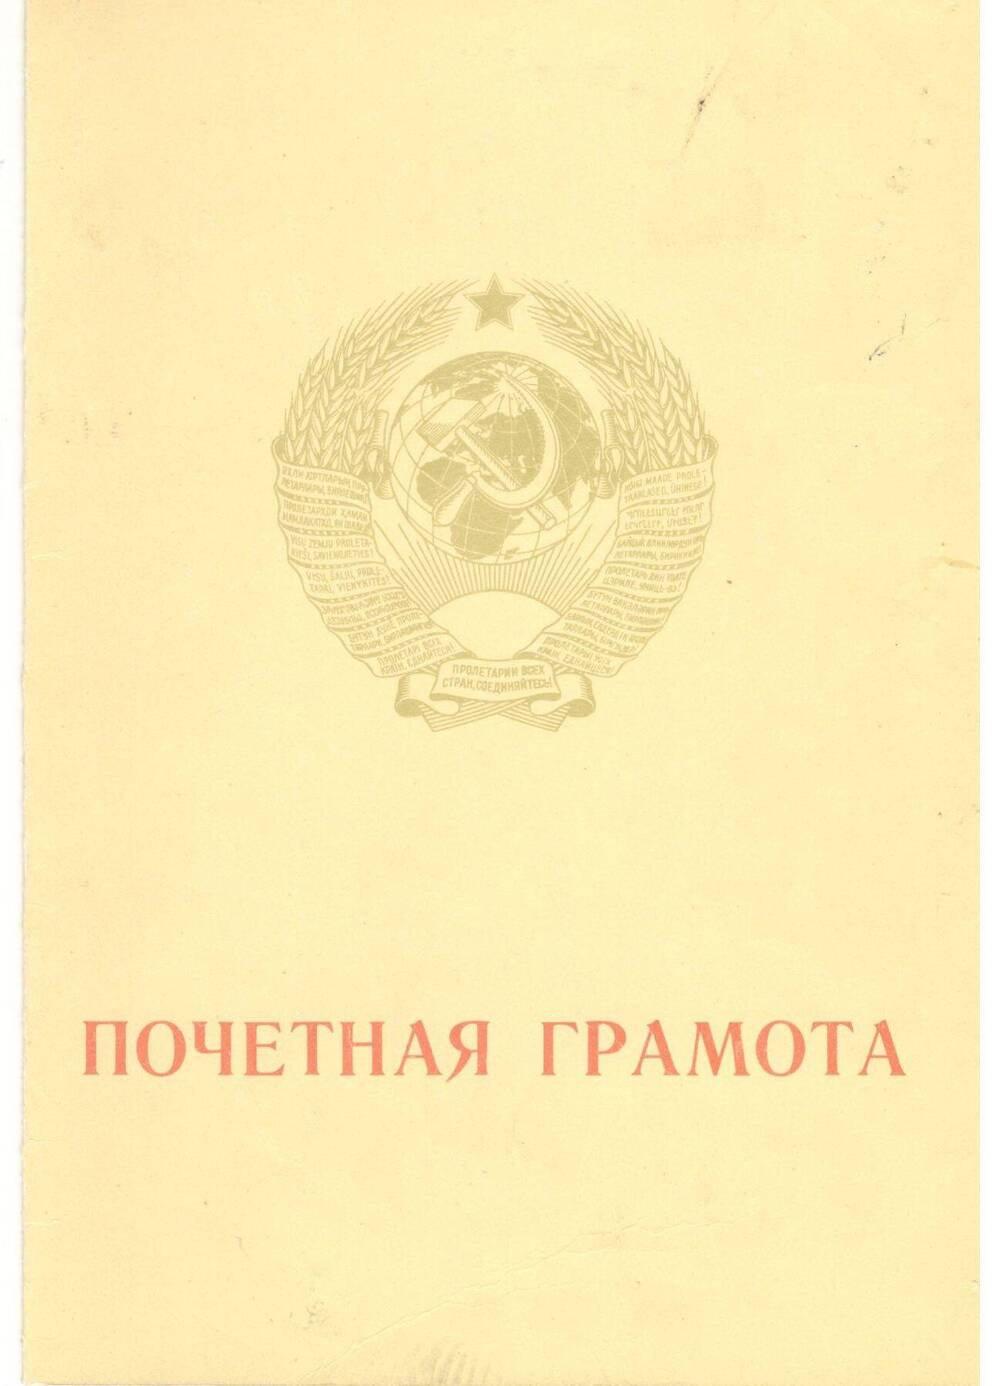 Почётная грамота от Министерства энергетики и электрификации СССР, ЦК профсоюза рабочих электростанций и электротехнической промышленности (Кузьмину И.А.), 1970 г.